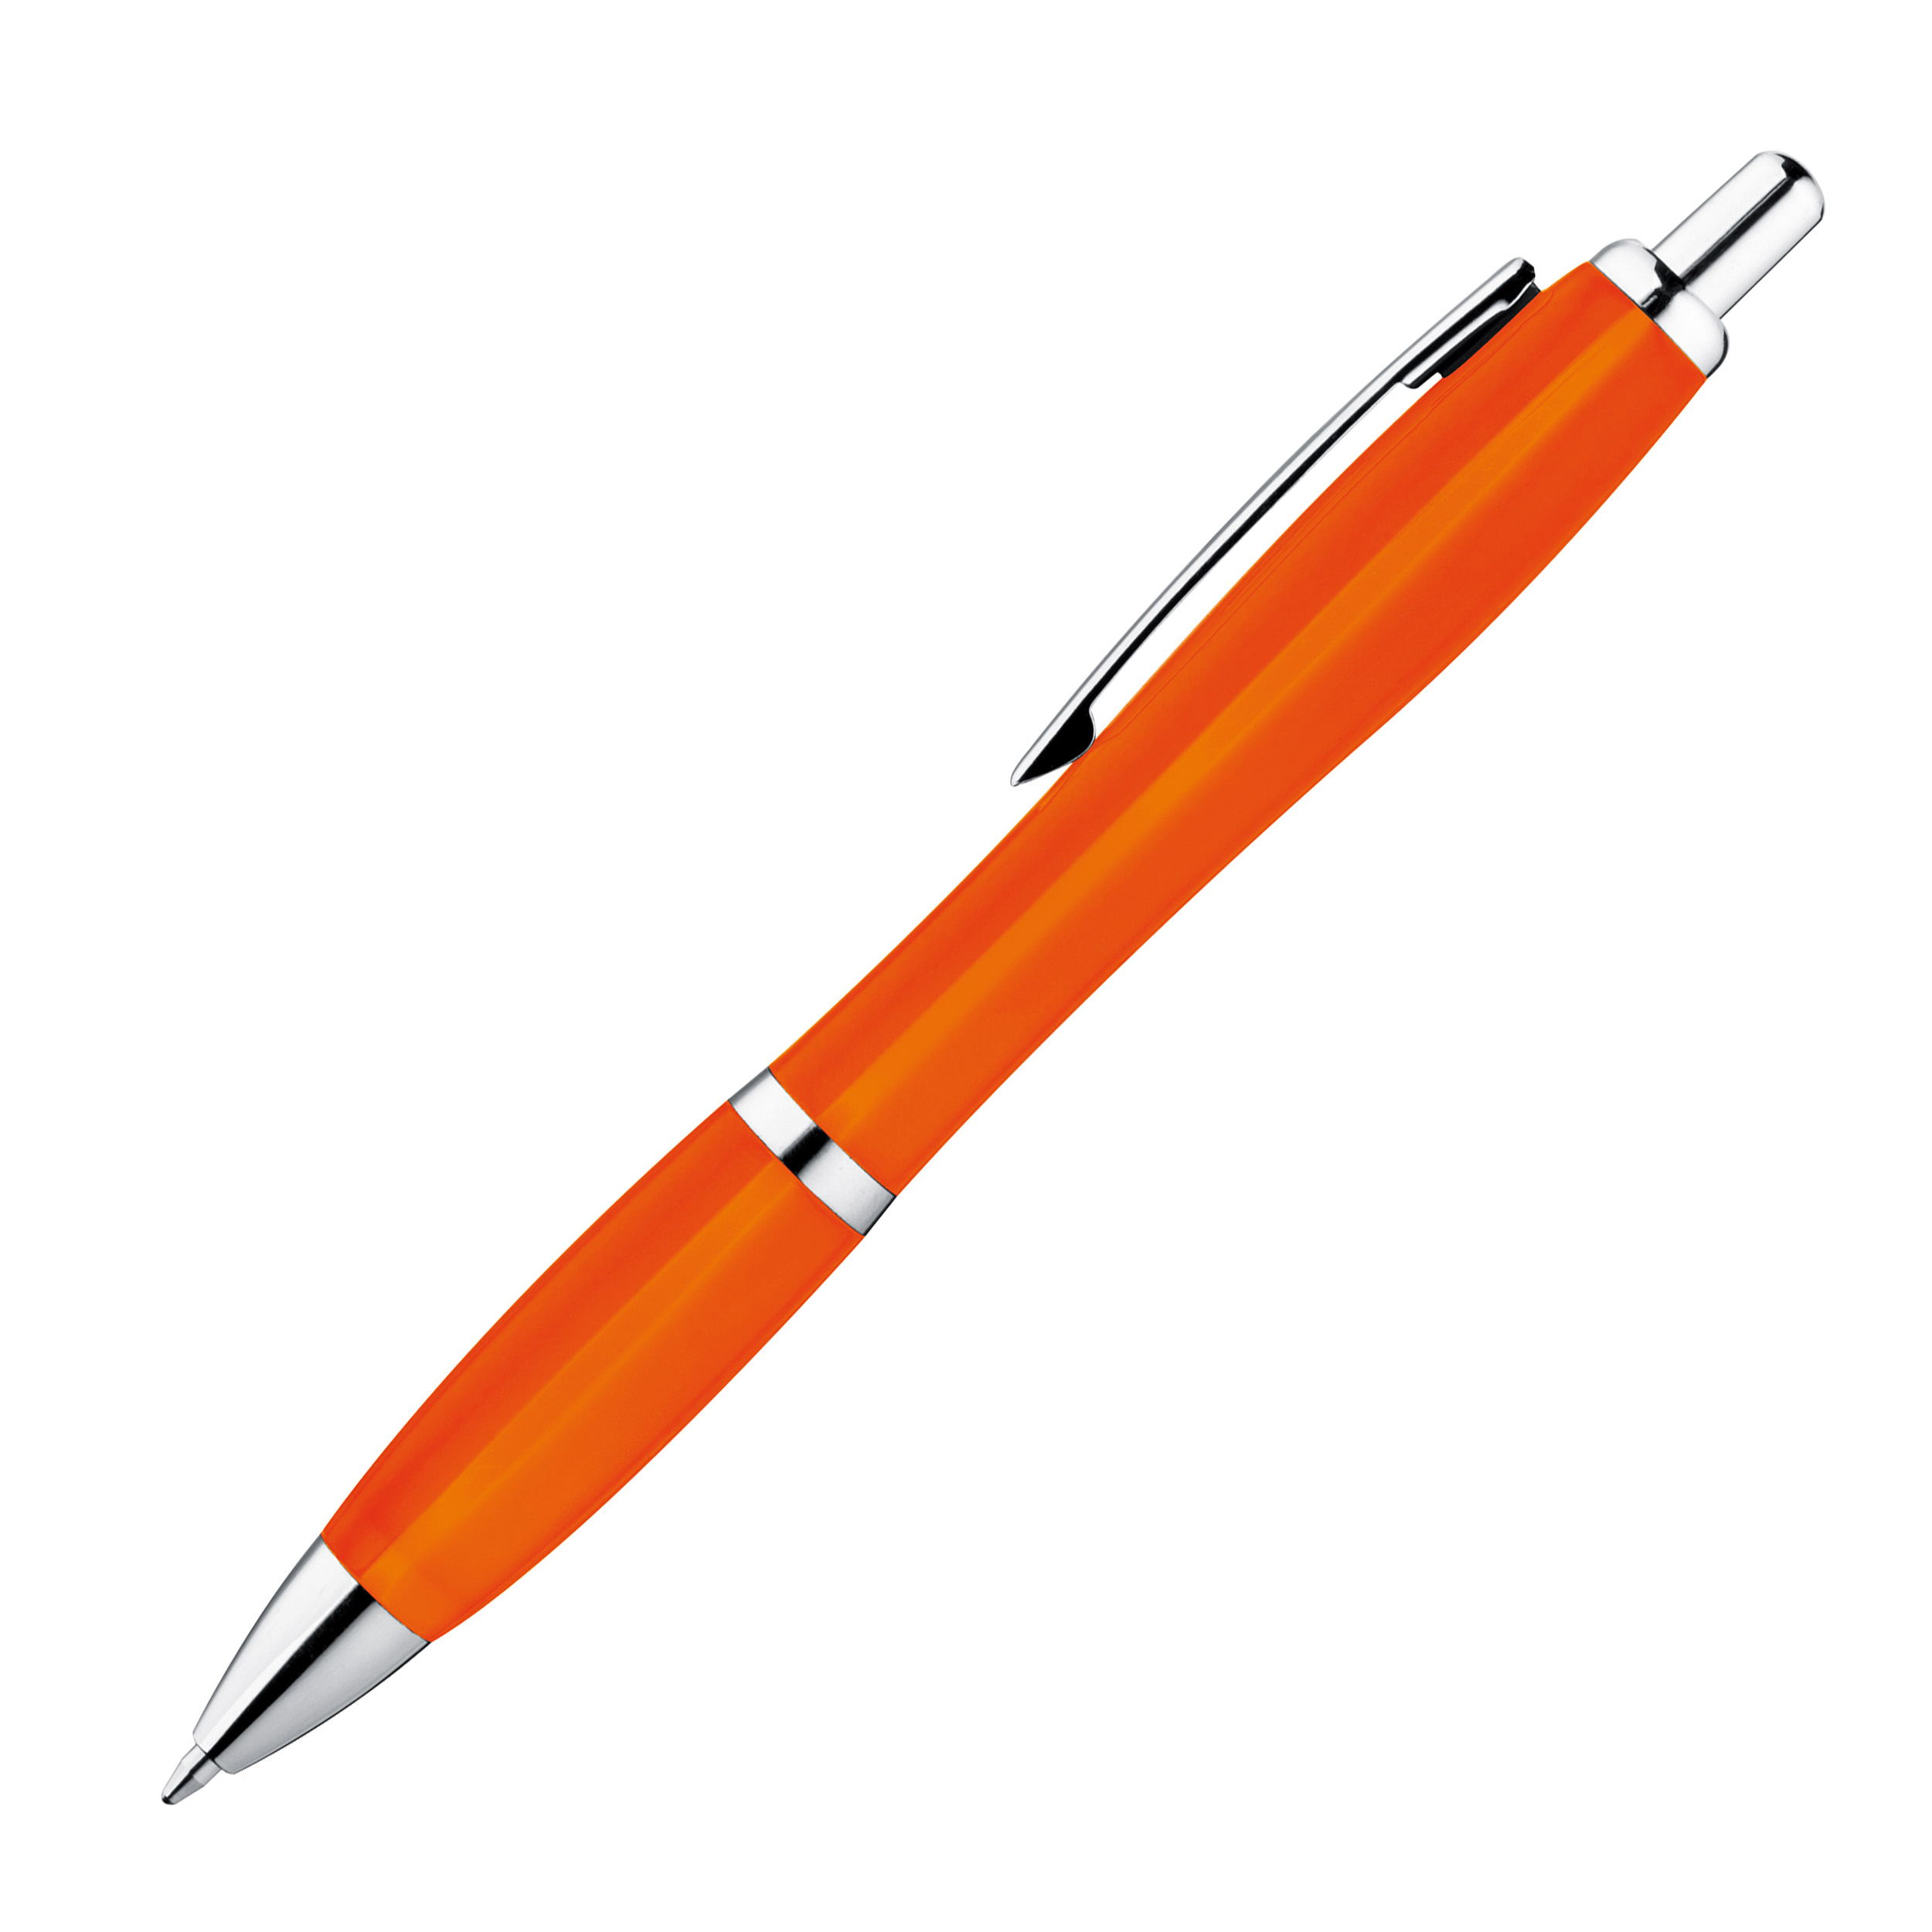 Kunststoffkugelschreiber vollfarbig